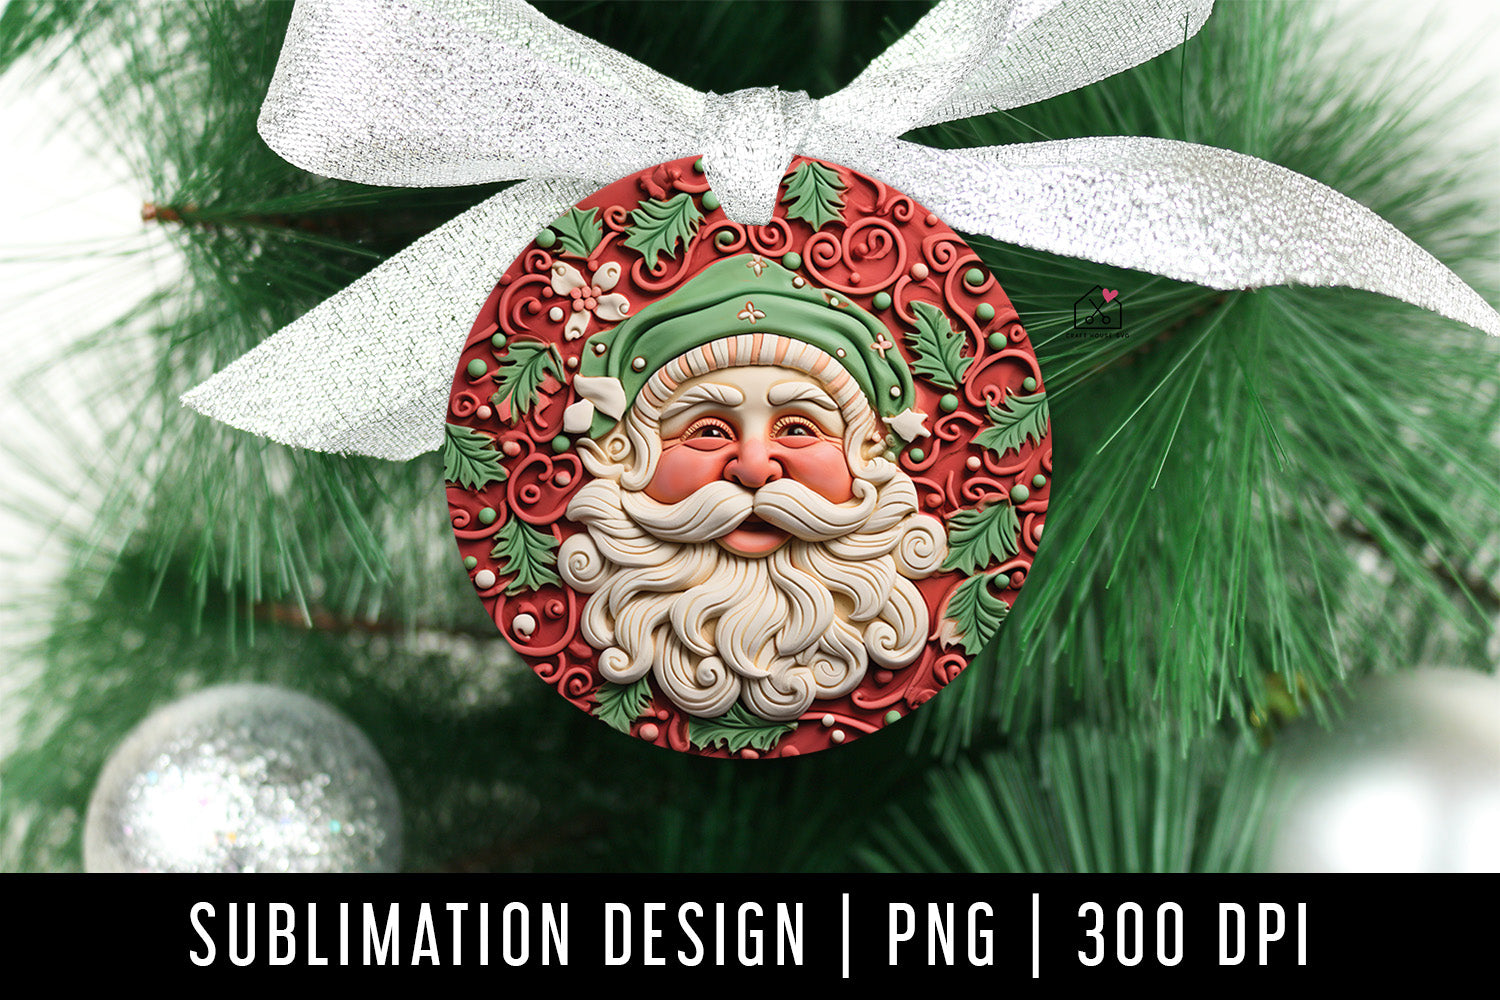 Santa 3D Ornament Christmas Sublimation Design PNG